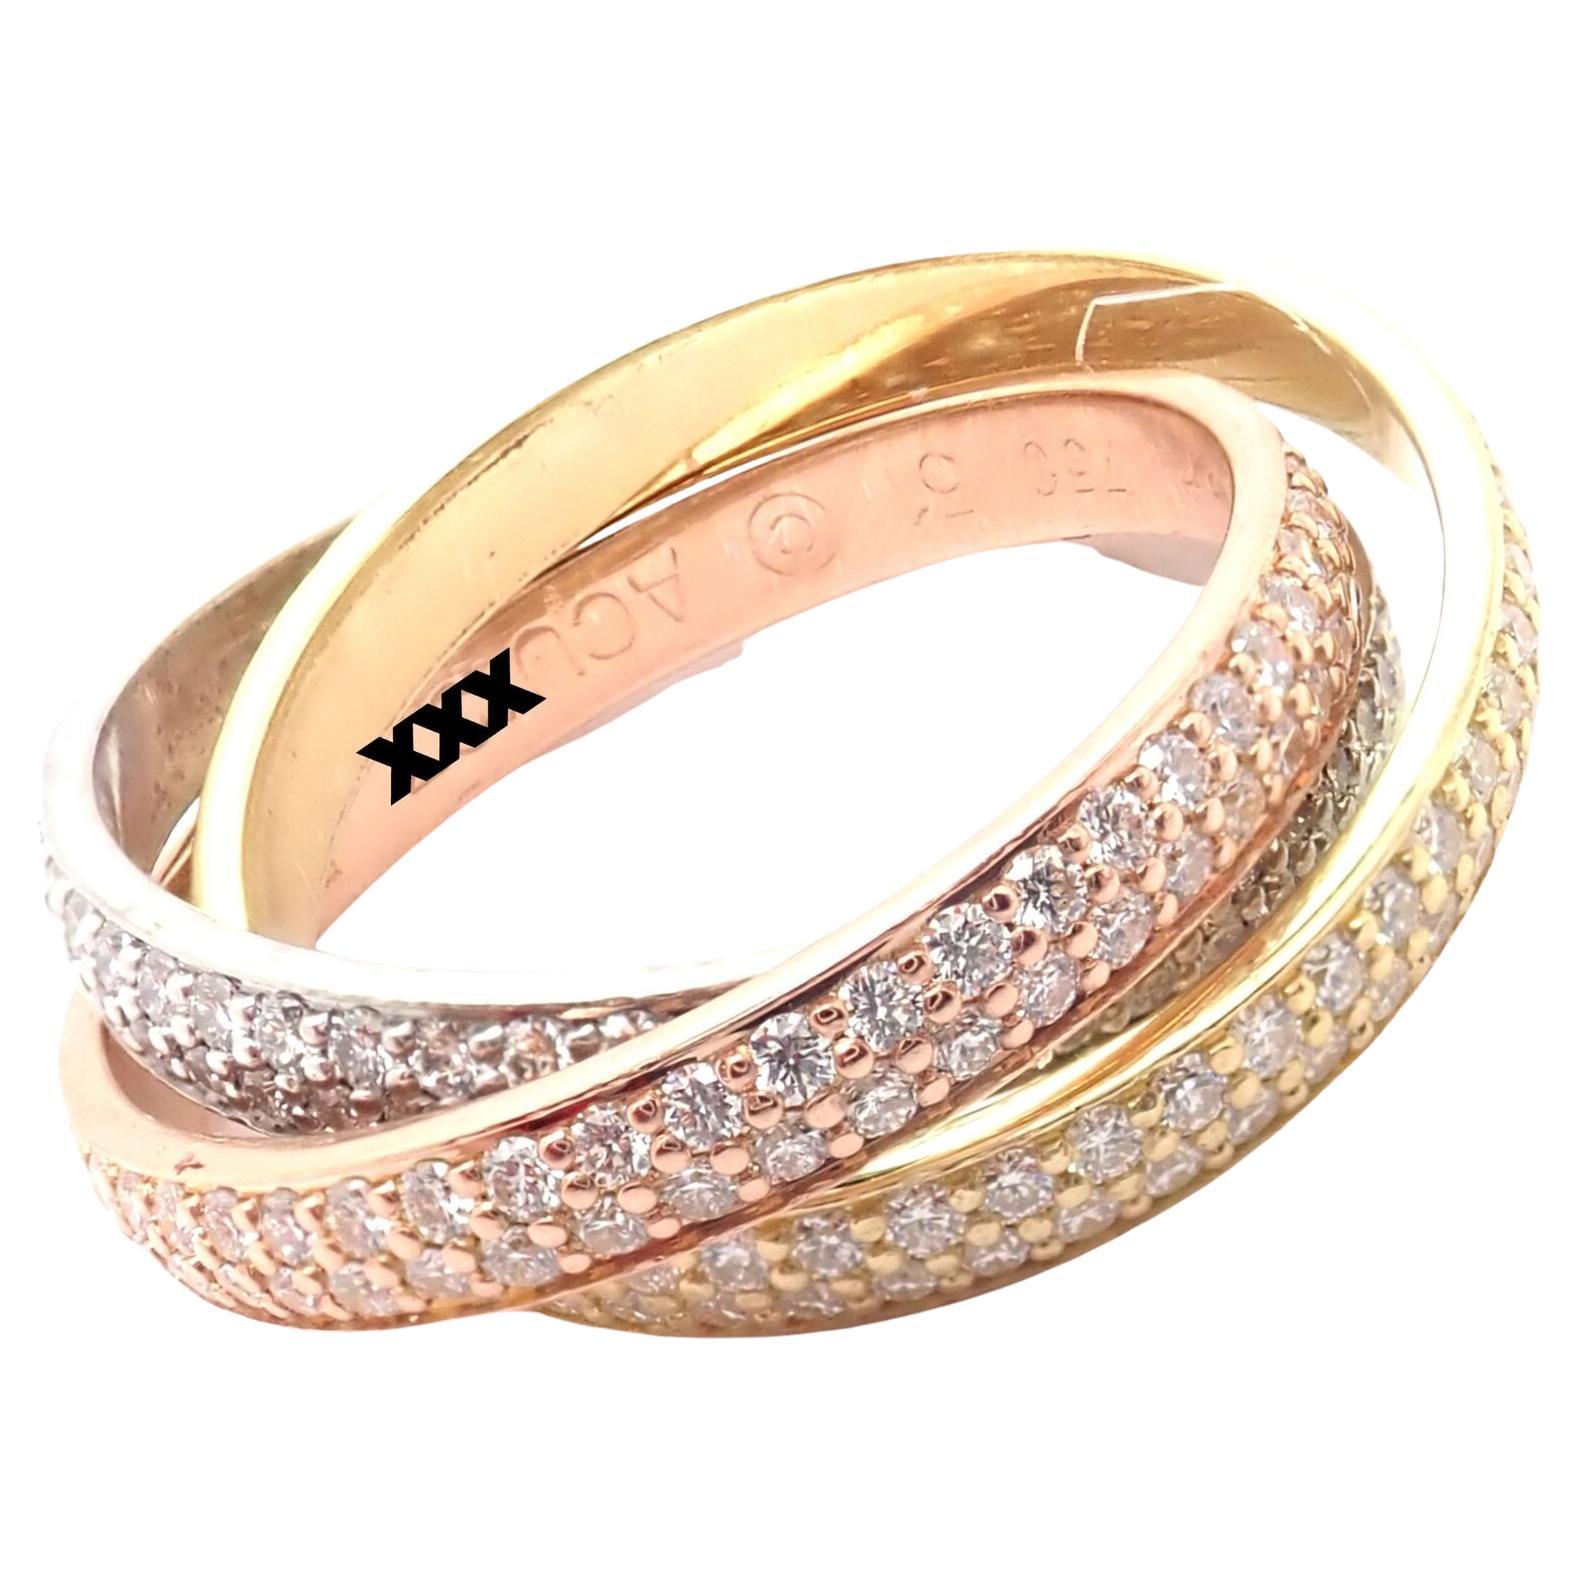 Cartier, petite bague Trinity modèle en or tricolore avec diamants